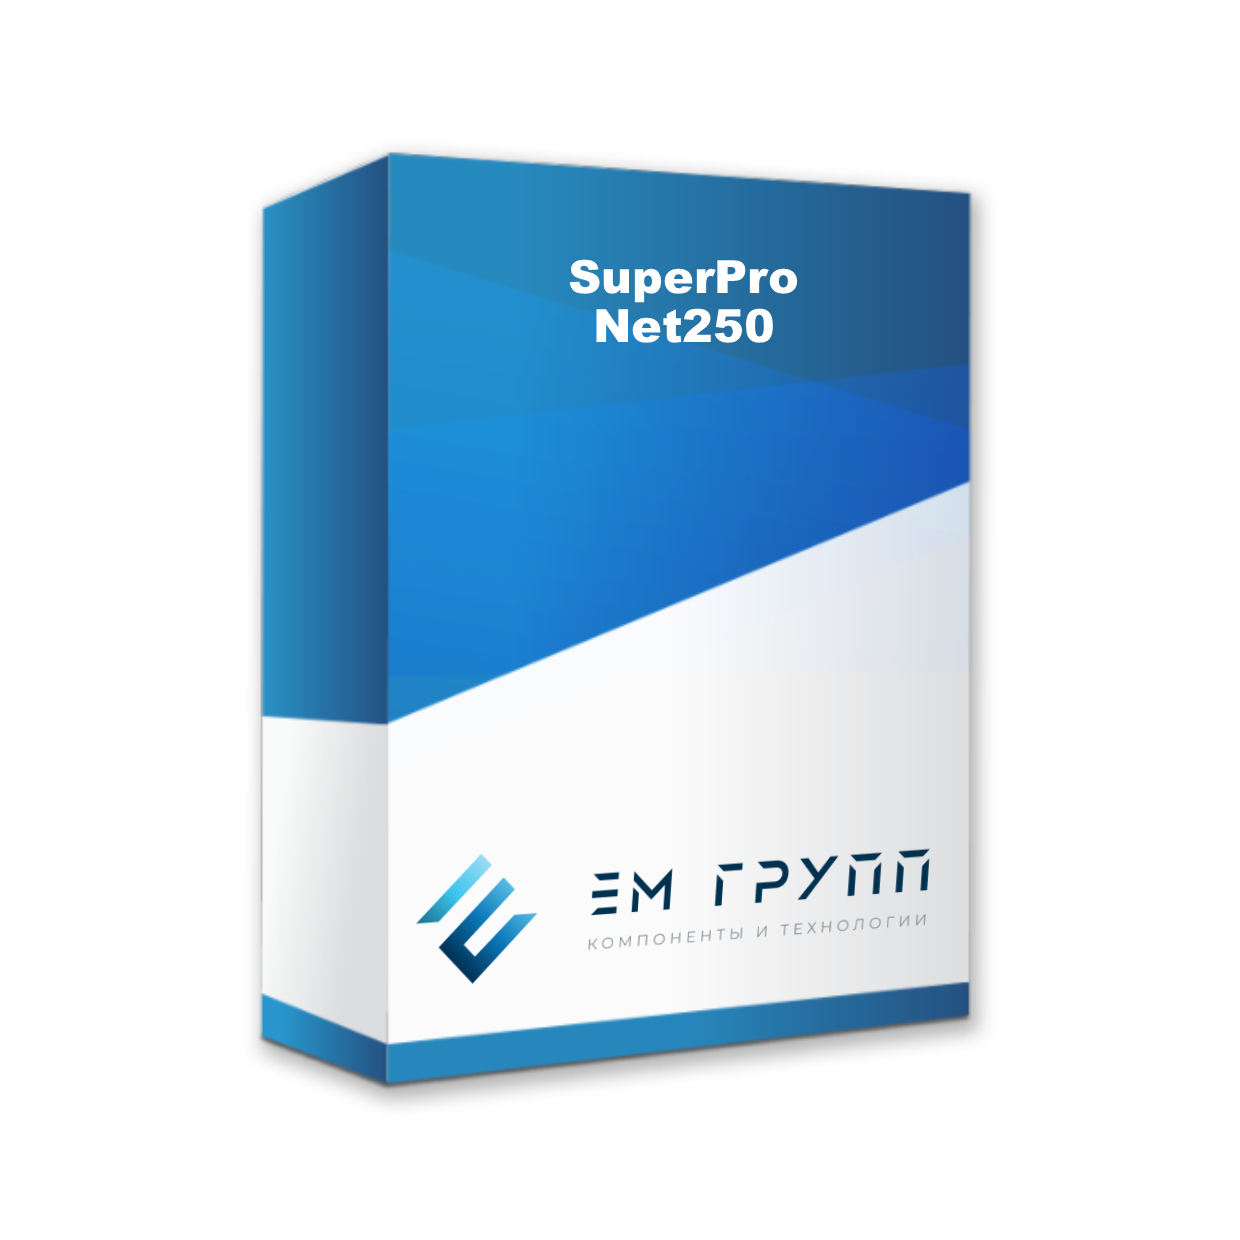 SuperPro Net250 от Safenet купить в ЕвроМобайл